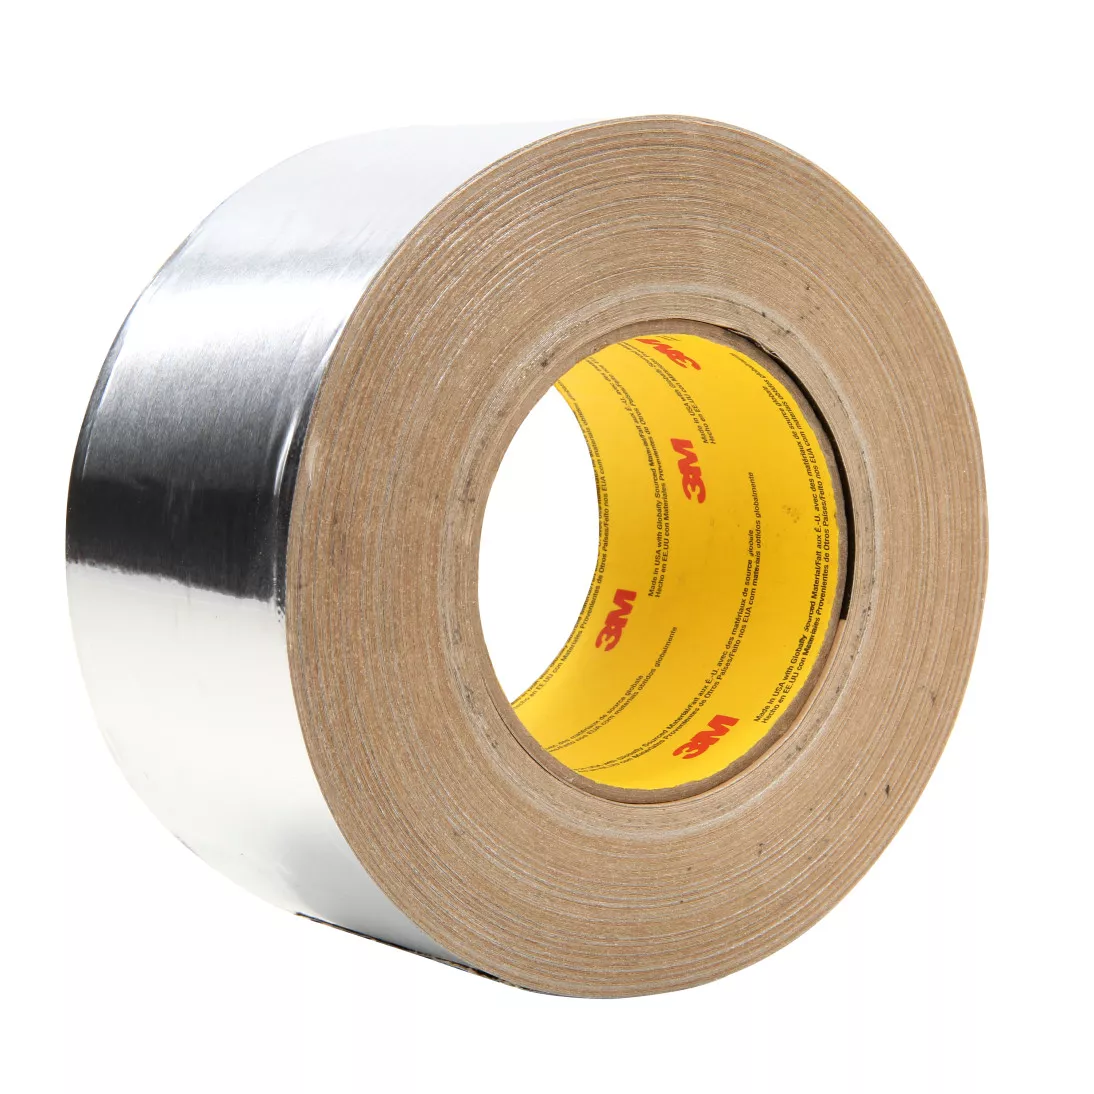 3M™ Aluminum Foil Tape 439, Silver, 3 1/4 in x 180 yd, 3.1 mil, 2 rolls
per case